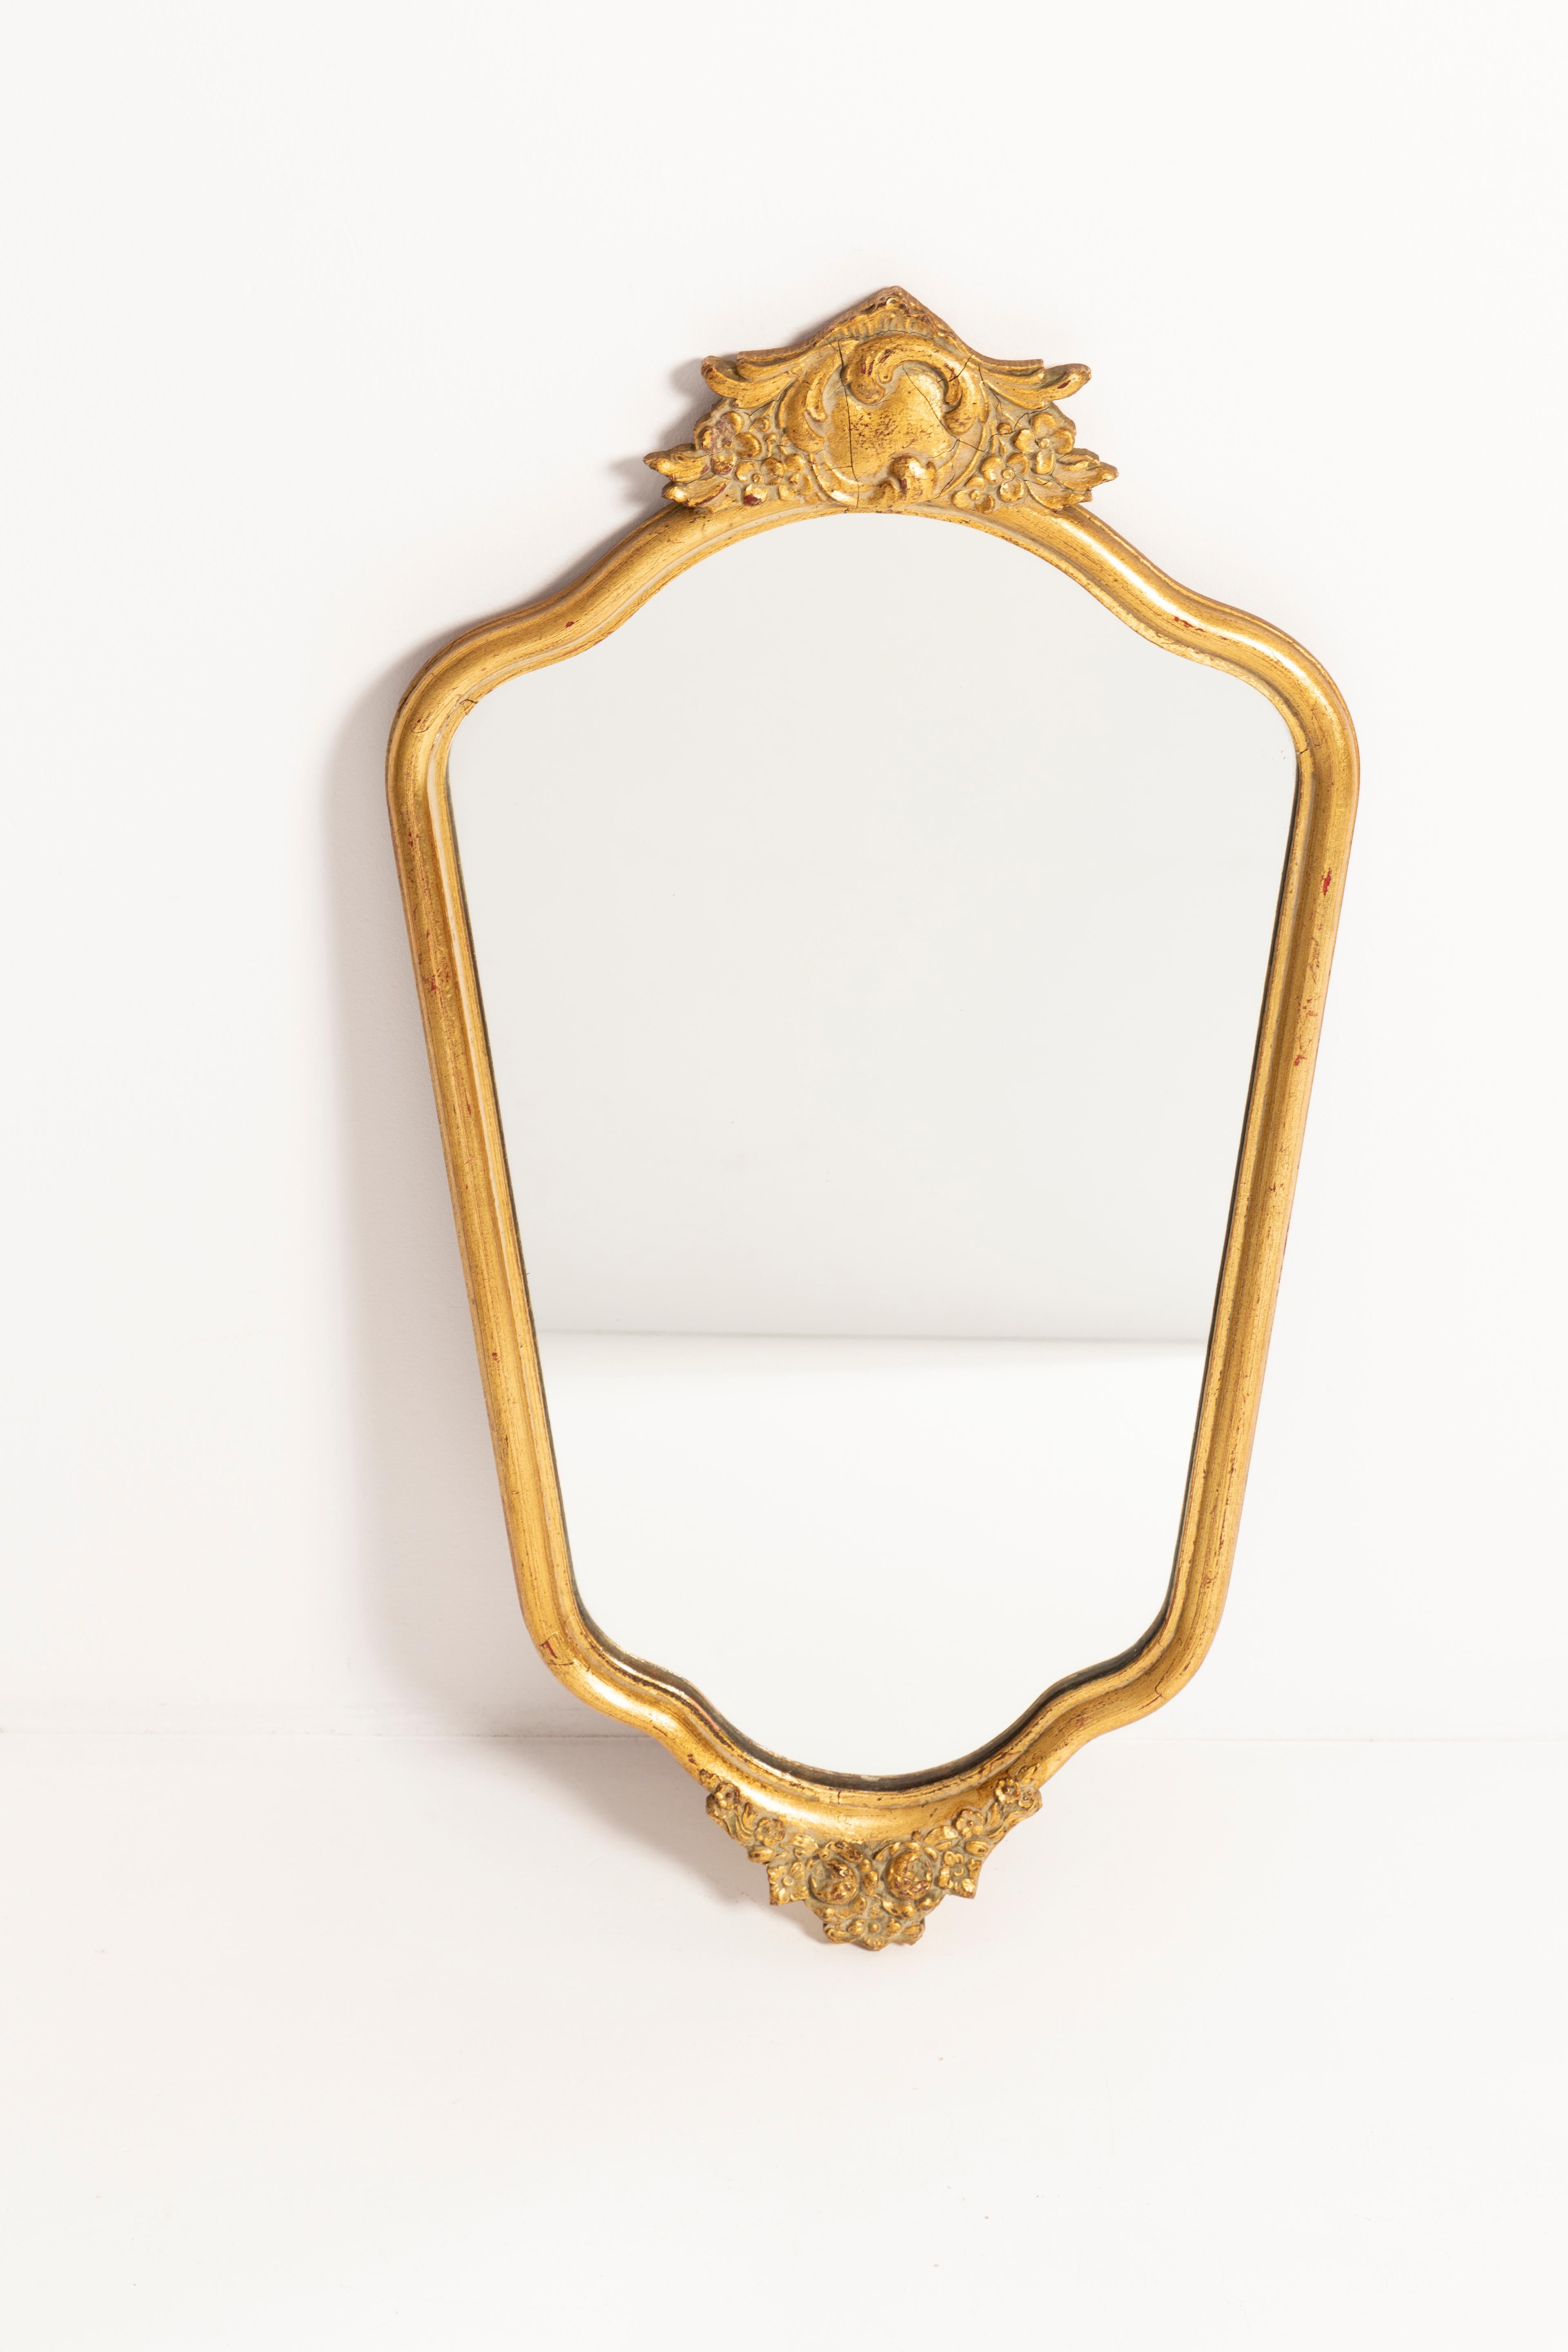 Schöner Spiegel in einem goldenen Zierrahmen aus Italien. Der Rahmen ist aus Holz gefertigt. Spiegel ist in sehr gutem Vintage-Zustand, keine Schäden oder Risse im Rahmen. Original Glas. Ein schönes Stück für jedes Interieur! Nur ein einziges Stück.